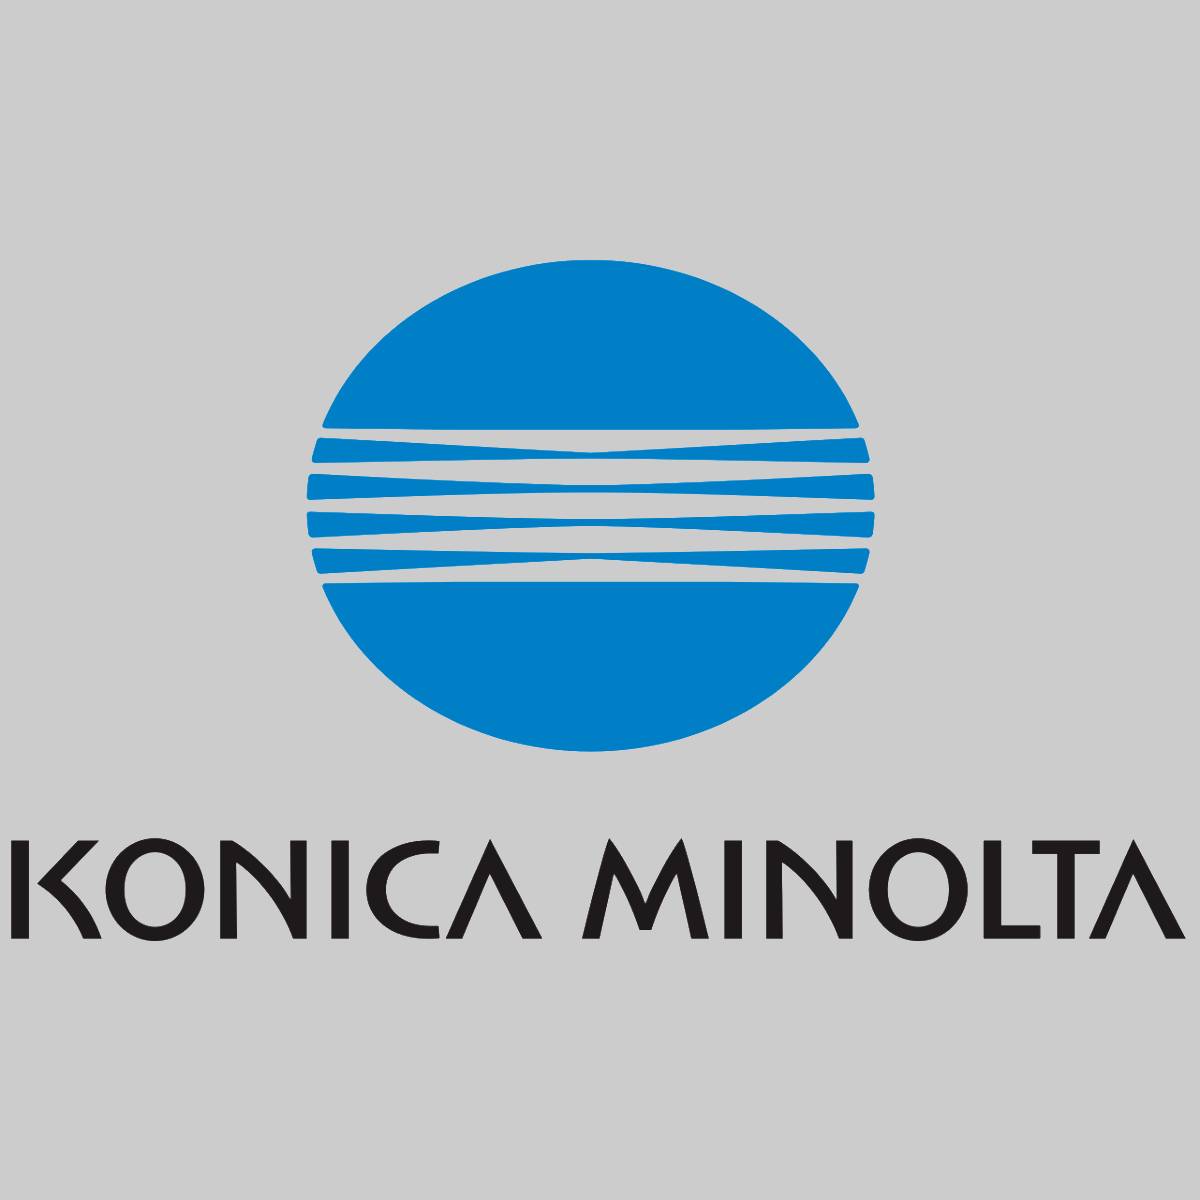 "Original Konica Minolta DR-311 YMC Drum Unit Color A0XVOTD for Bizhub C220 C380